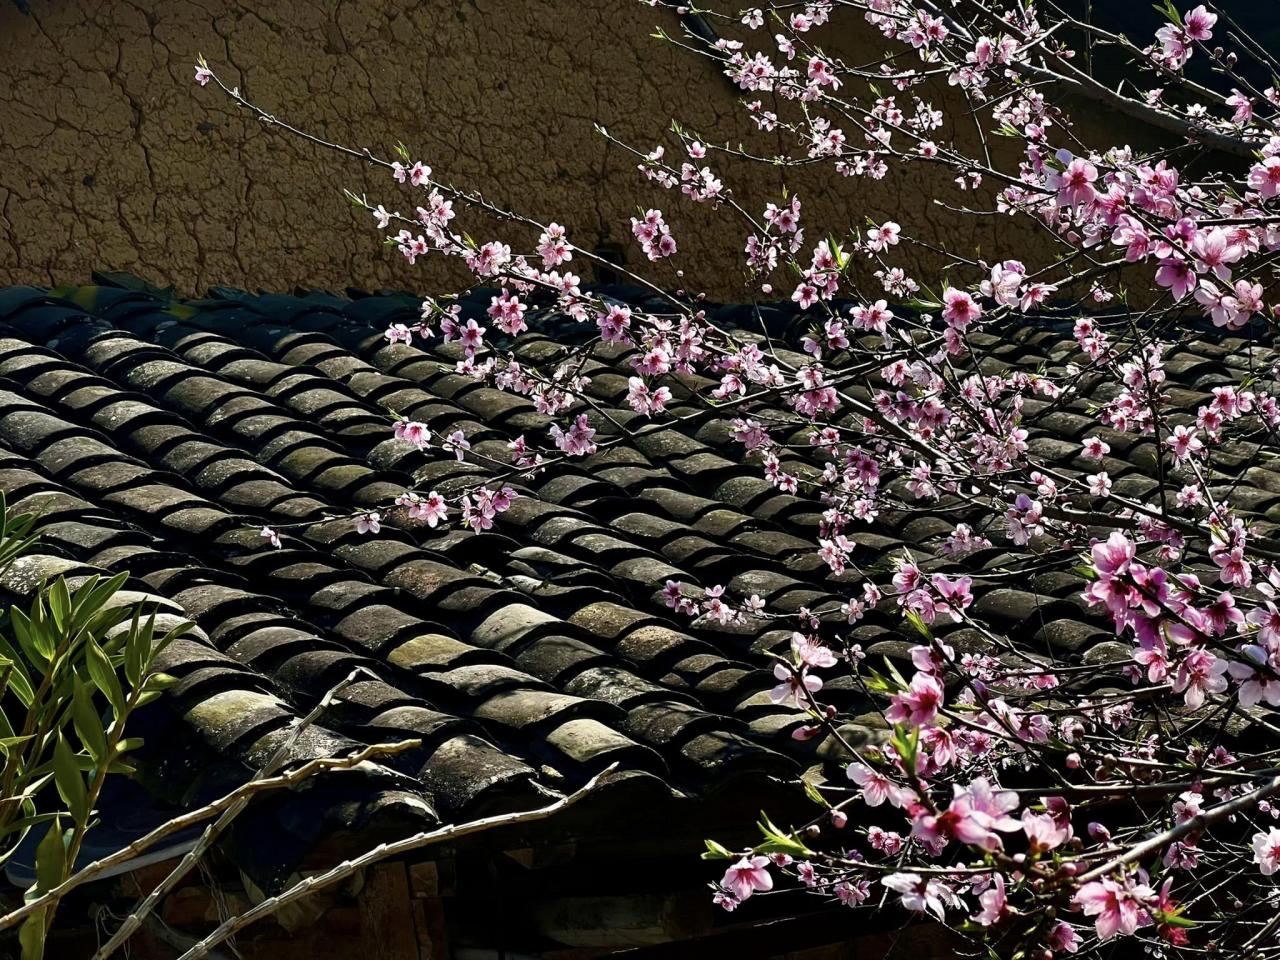 Hoa đào nở bên mái ngói âm dương của căn nhà cổ người H Mông, một hình ảnh đặc trưng cho mùa xuân bình yên nhưng không thiếu sắc màu rực rỡ của miền đá. Ảnh: Công Trọc